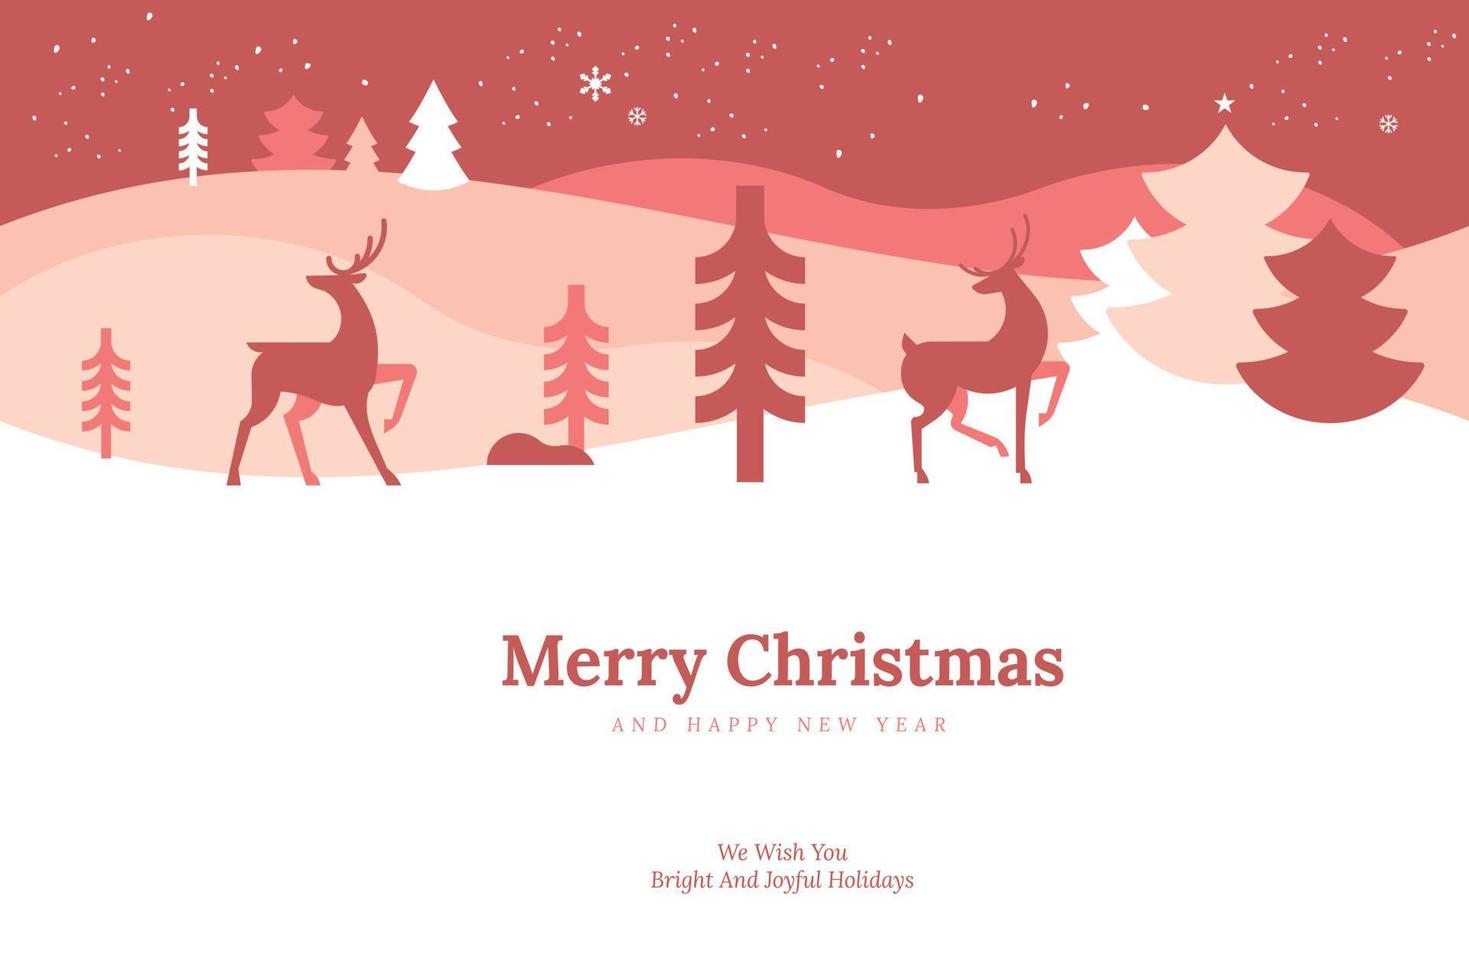 vrolijk Kerstmis en gelukkig nieuw jaar. vector illustratie voor achtergrond, groet kaart, partij uitnodiging kaart, website banier, sociaal media banier, afzet materiaal.